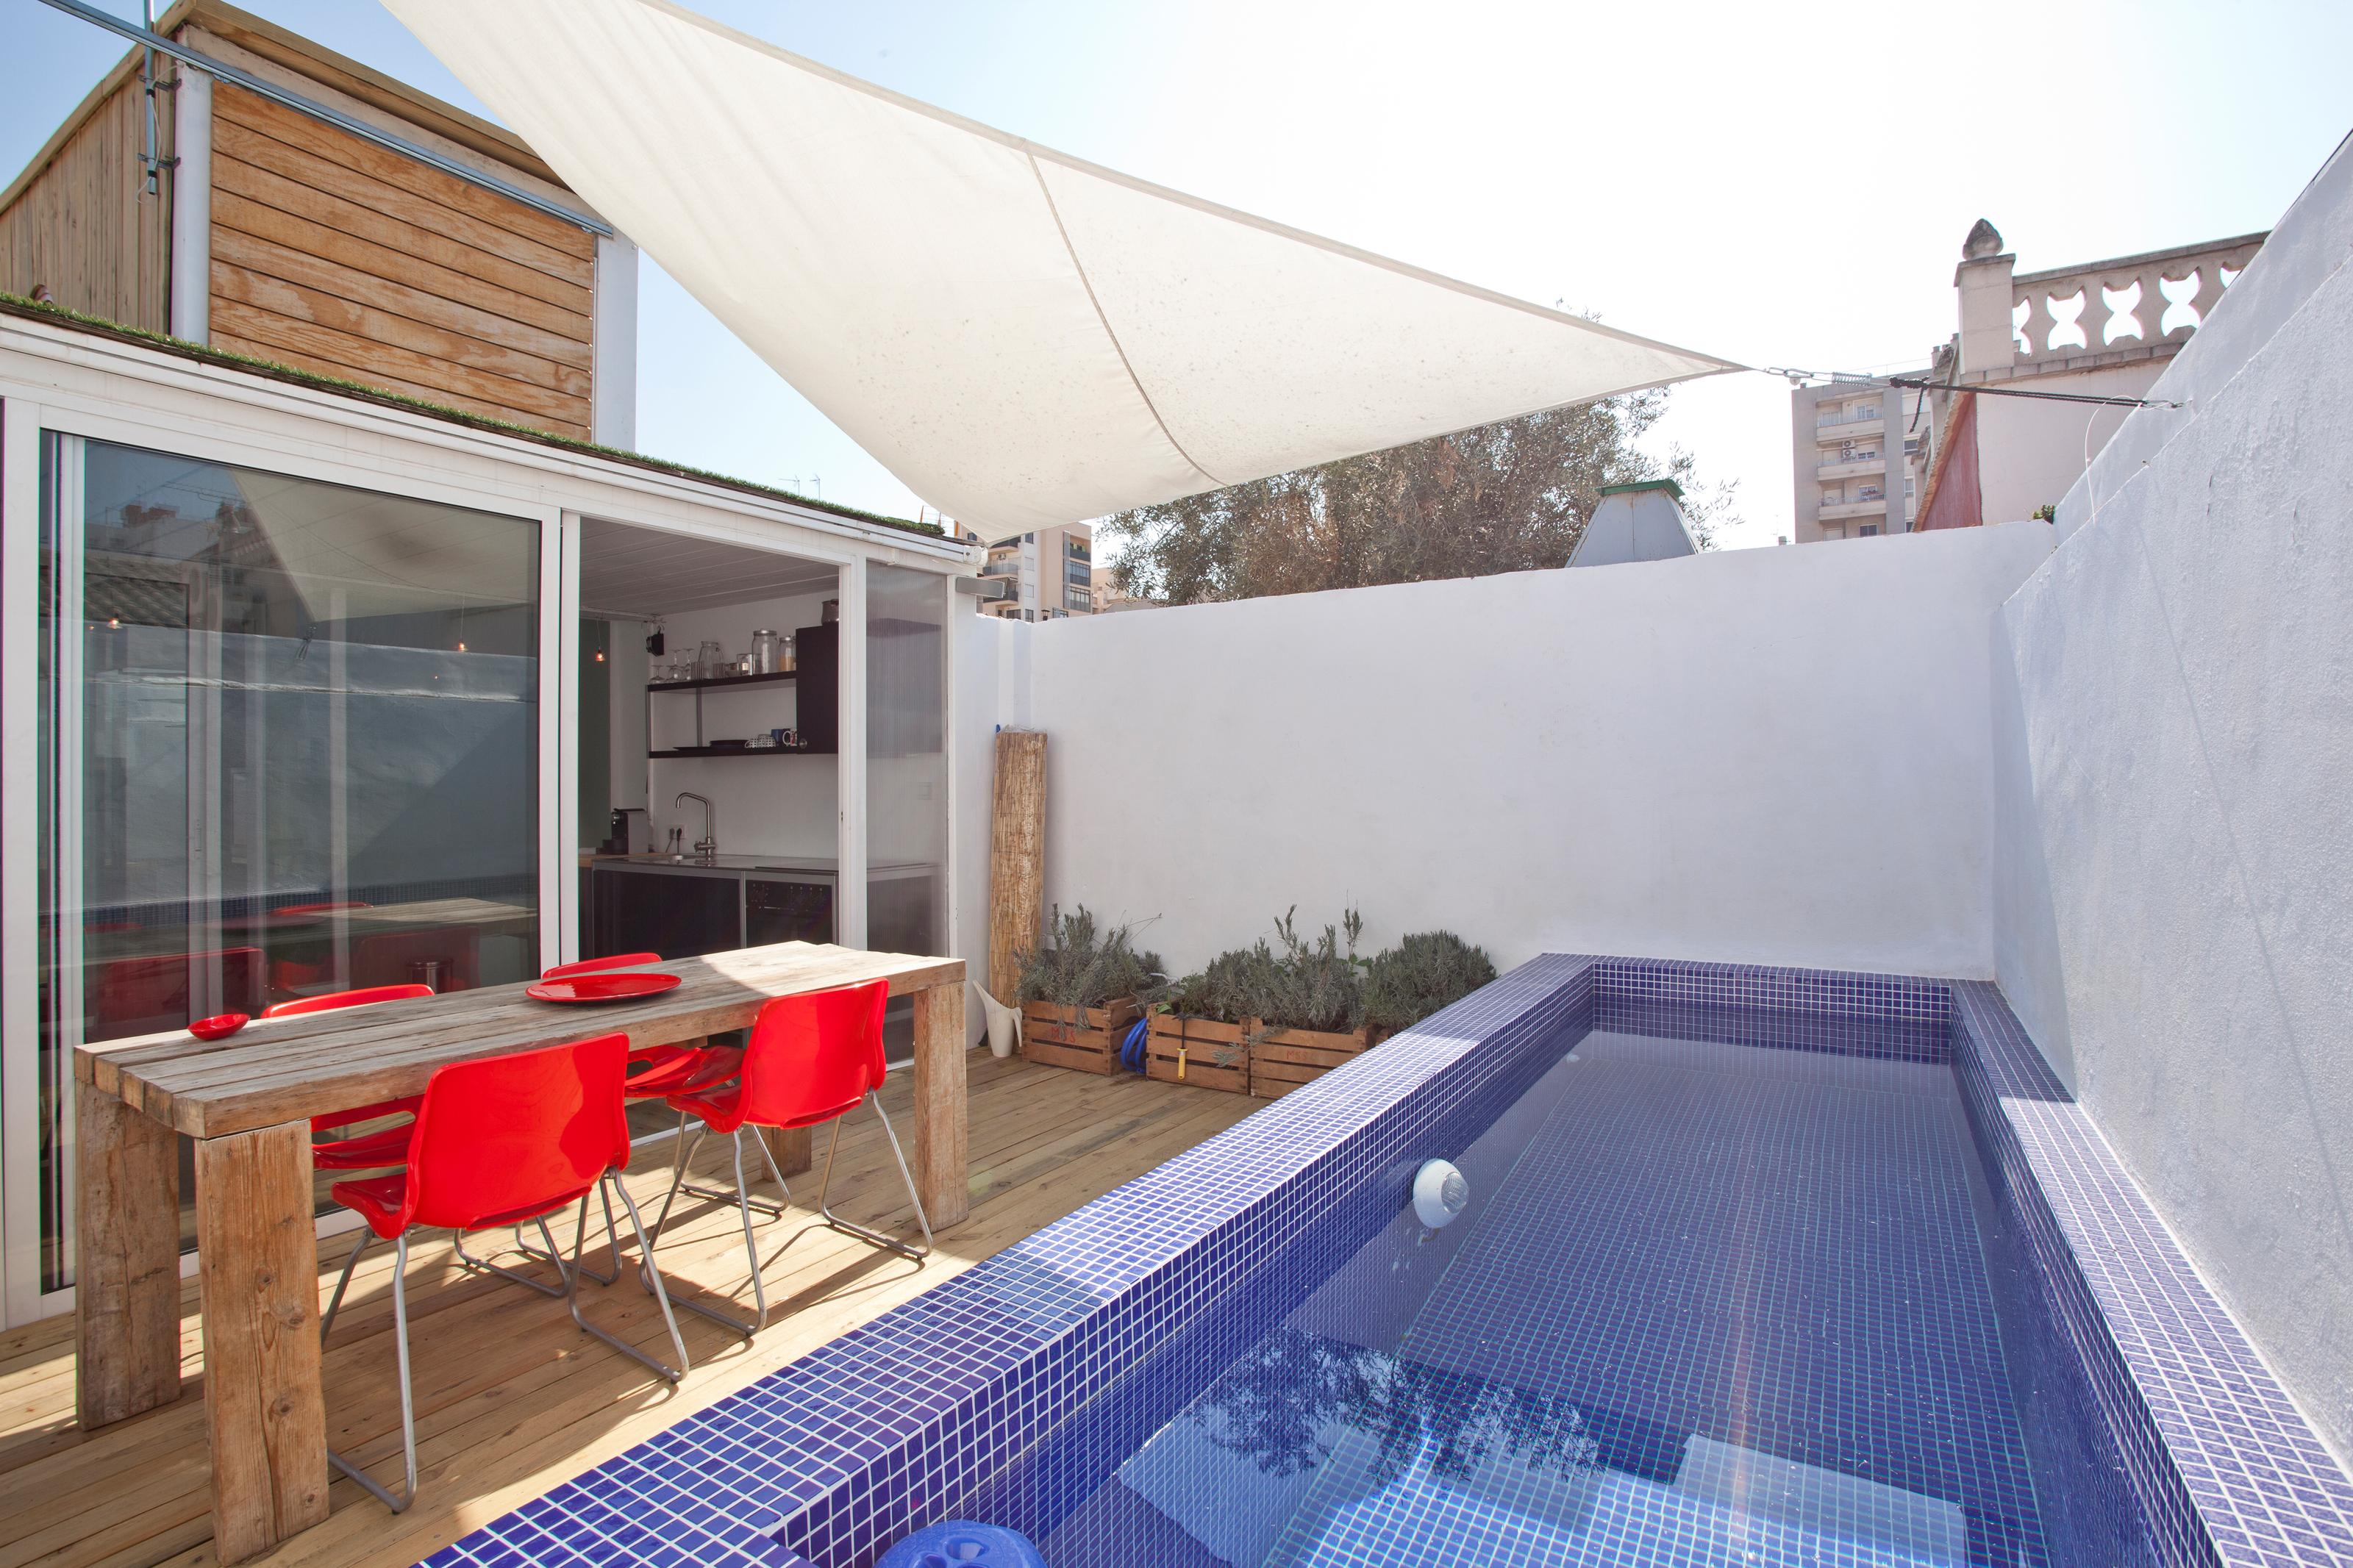 Terrasse mit Pool und Sonnensegel #pool #terrasse #sonnensegel #terrasseampool #containerhaus ©Airbnb